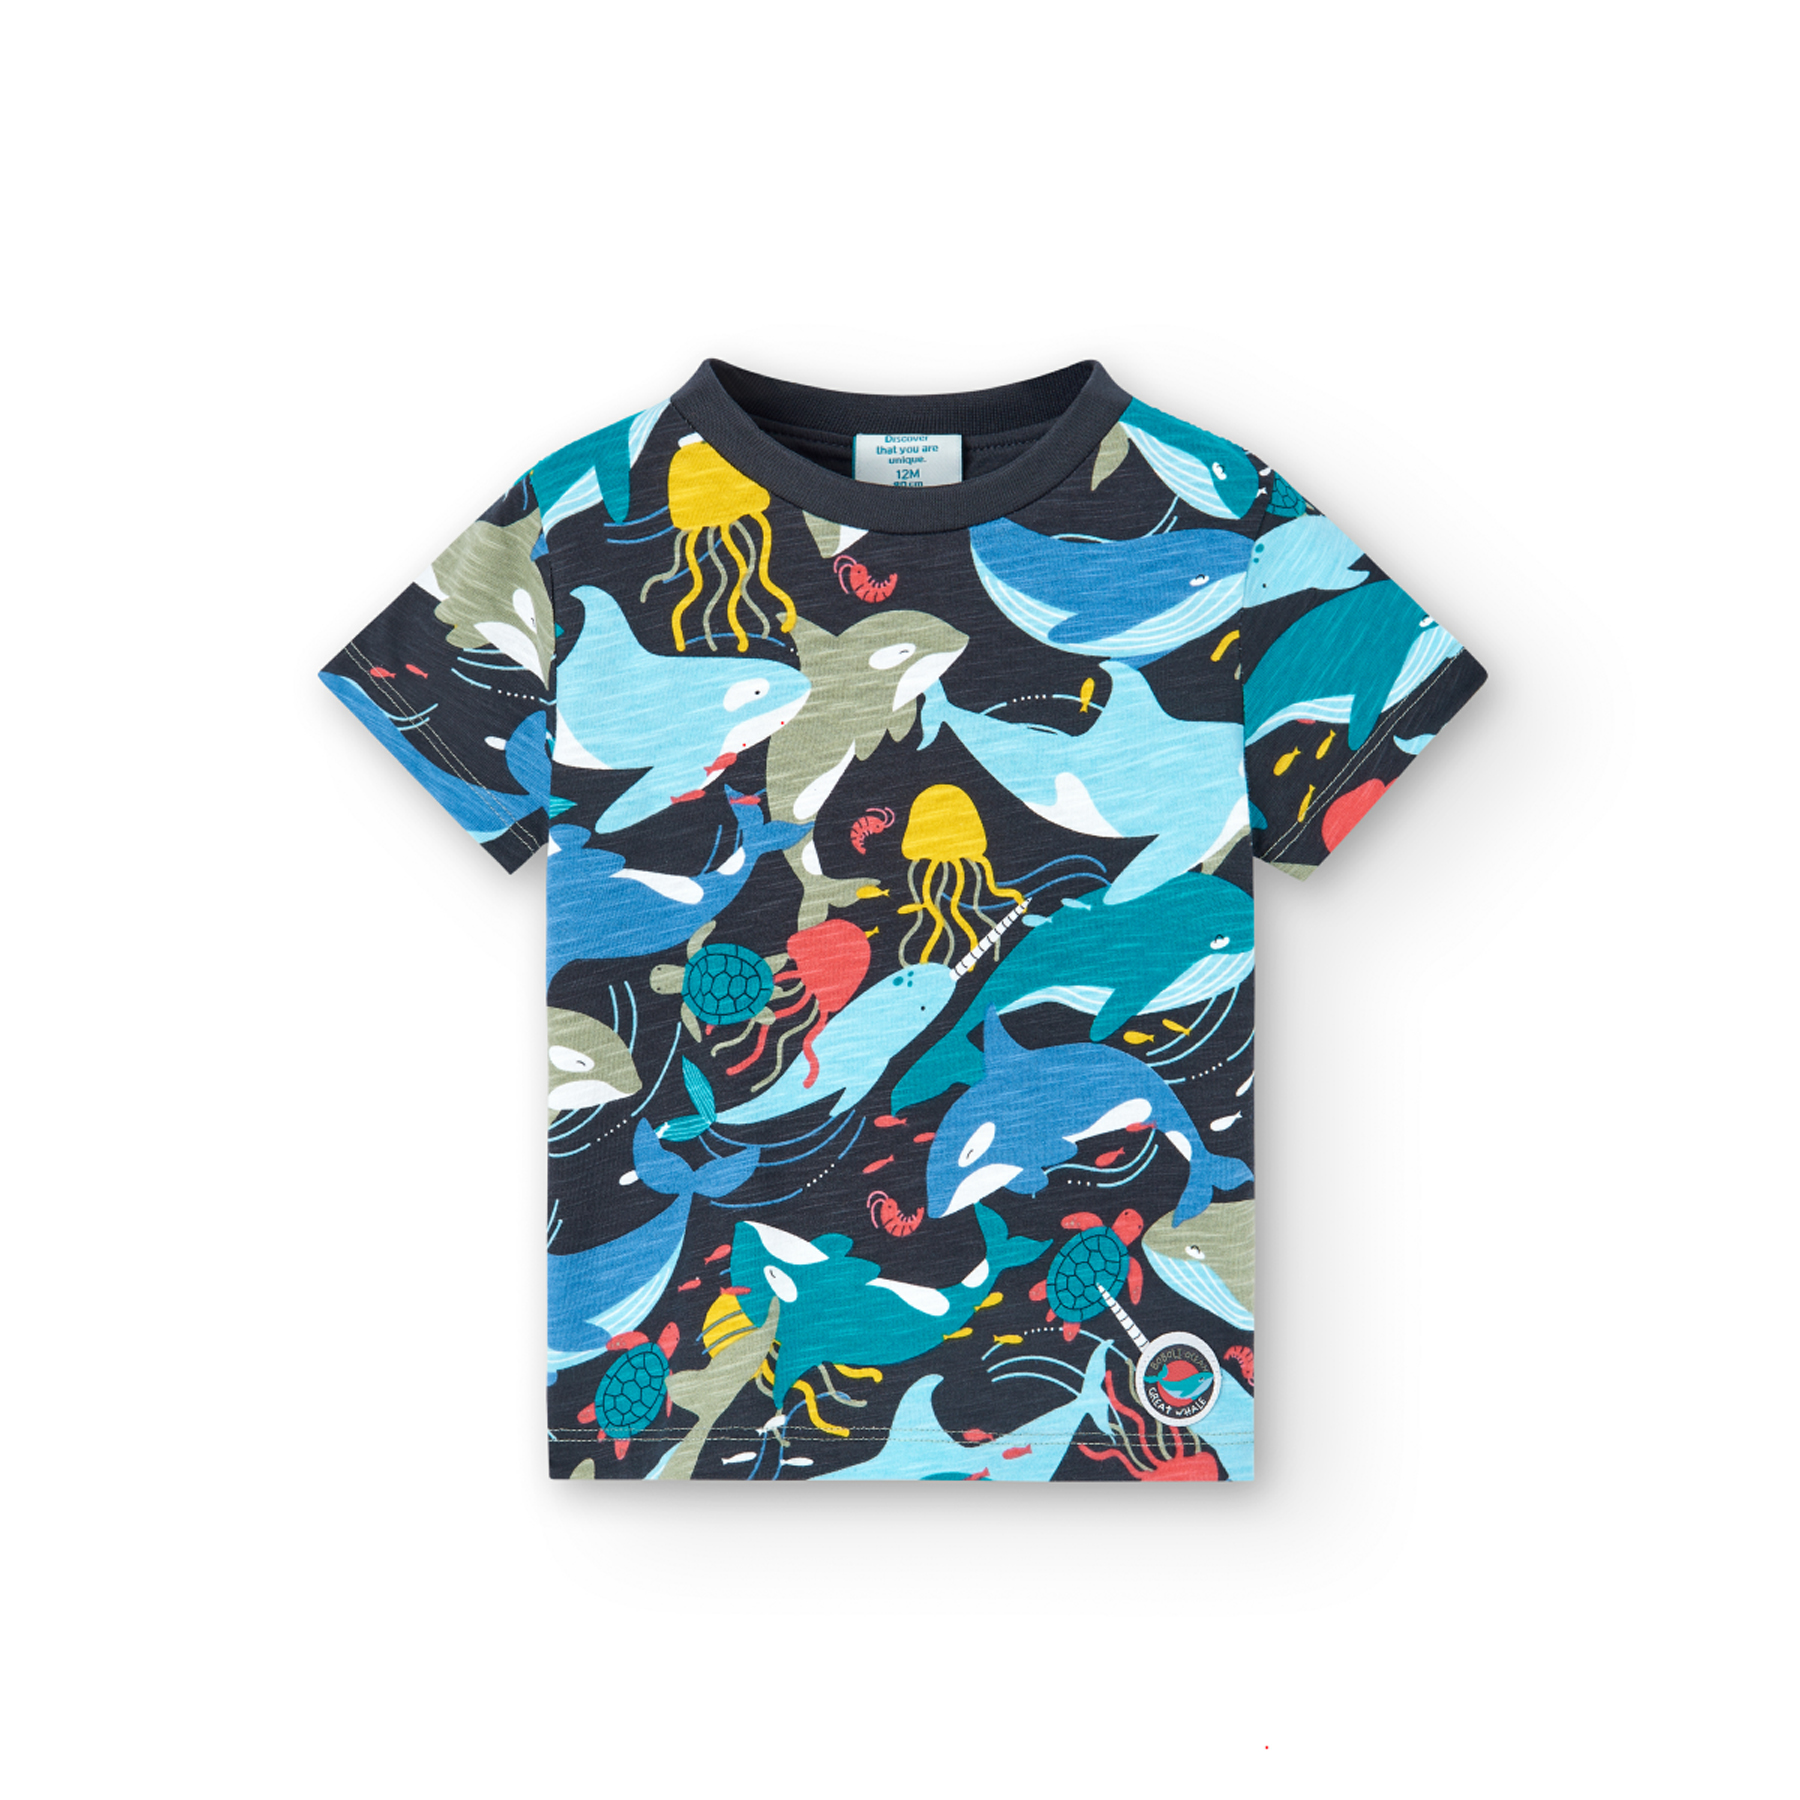 Chlapecké tričko s potiskem mořského světa BOBOLI